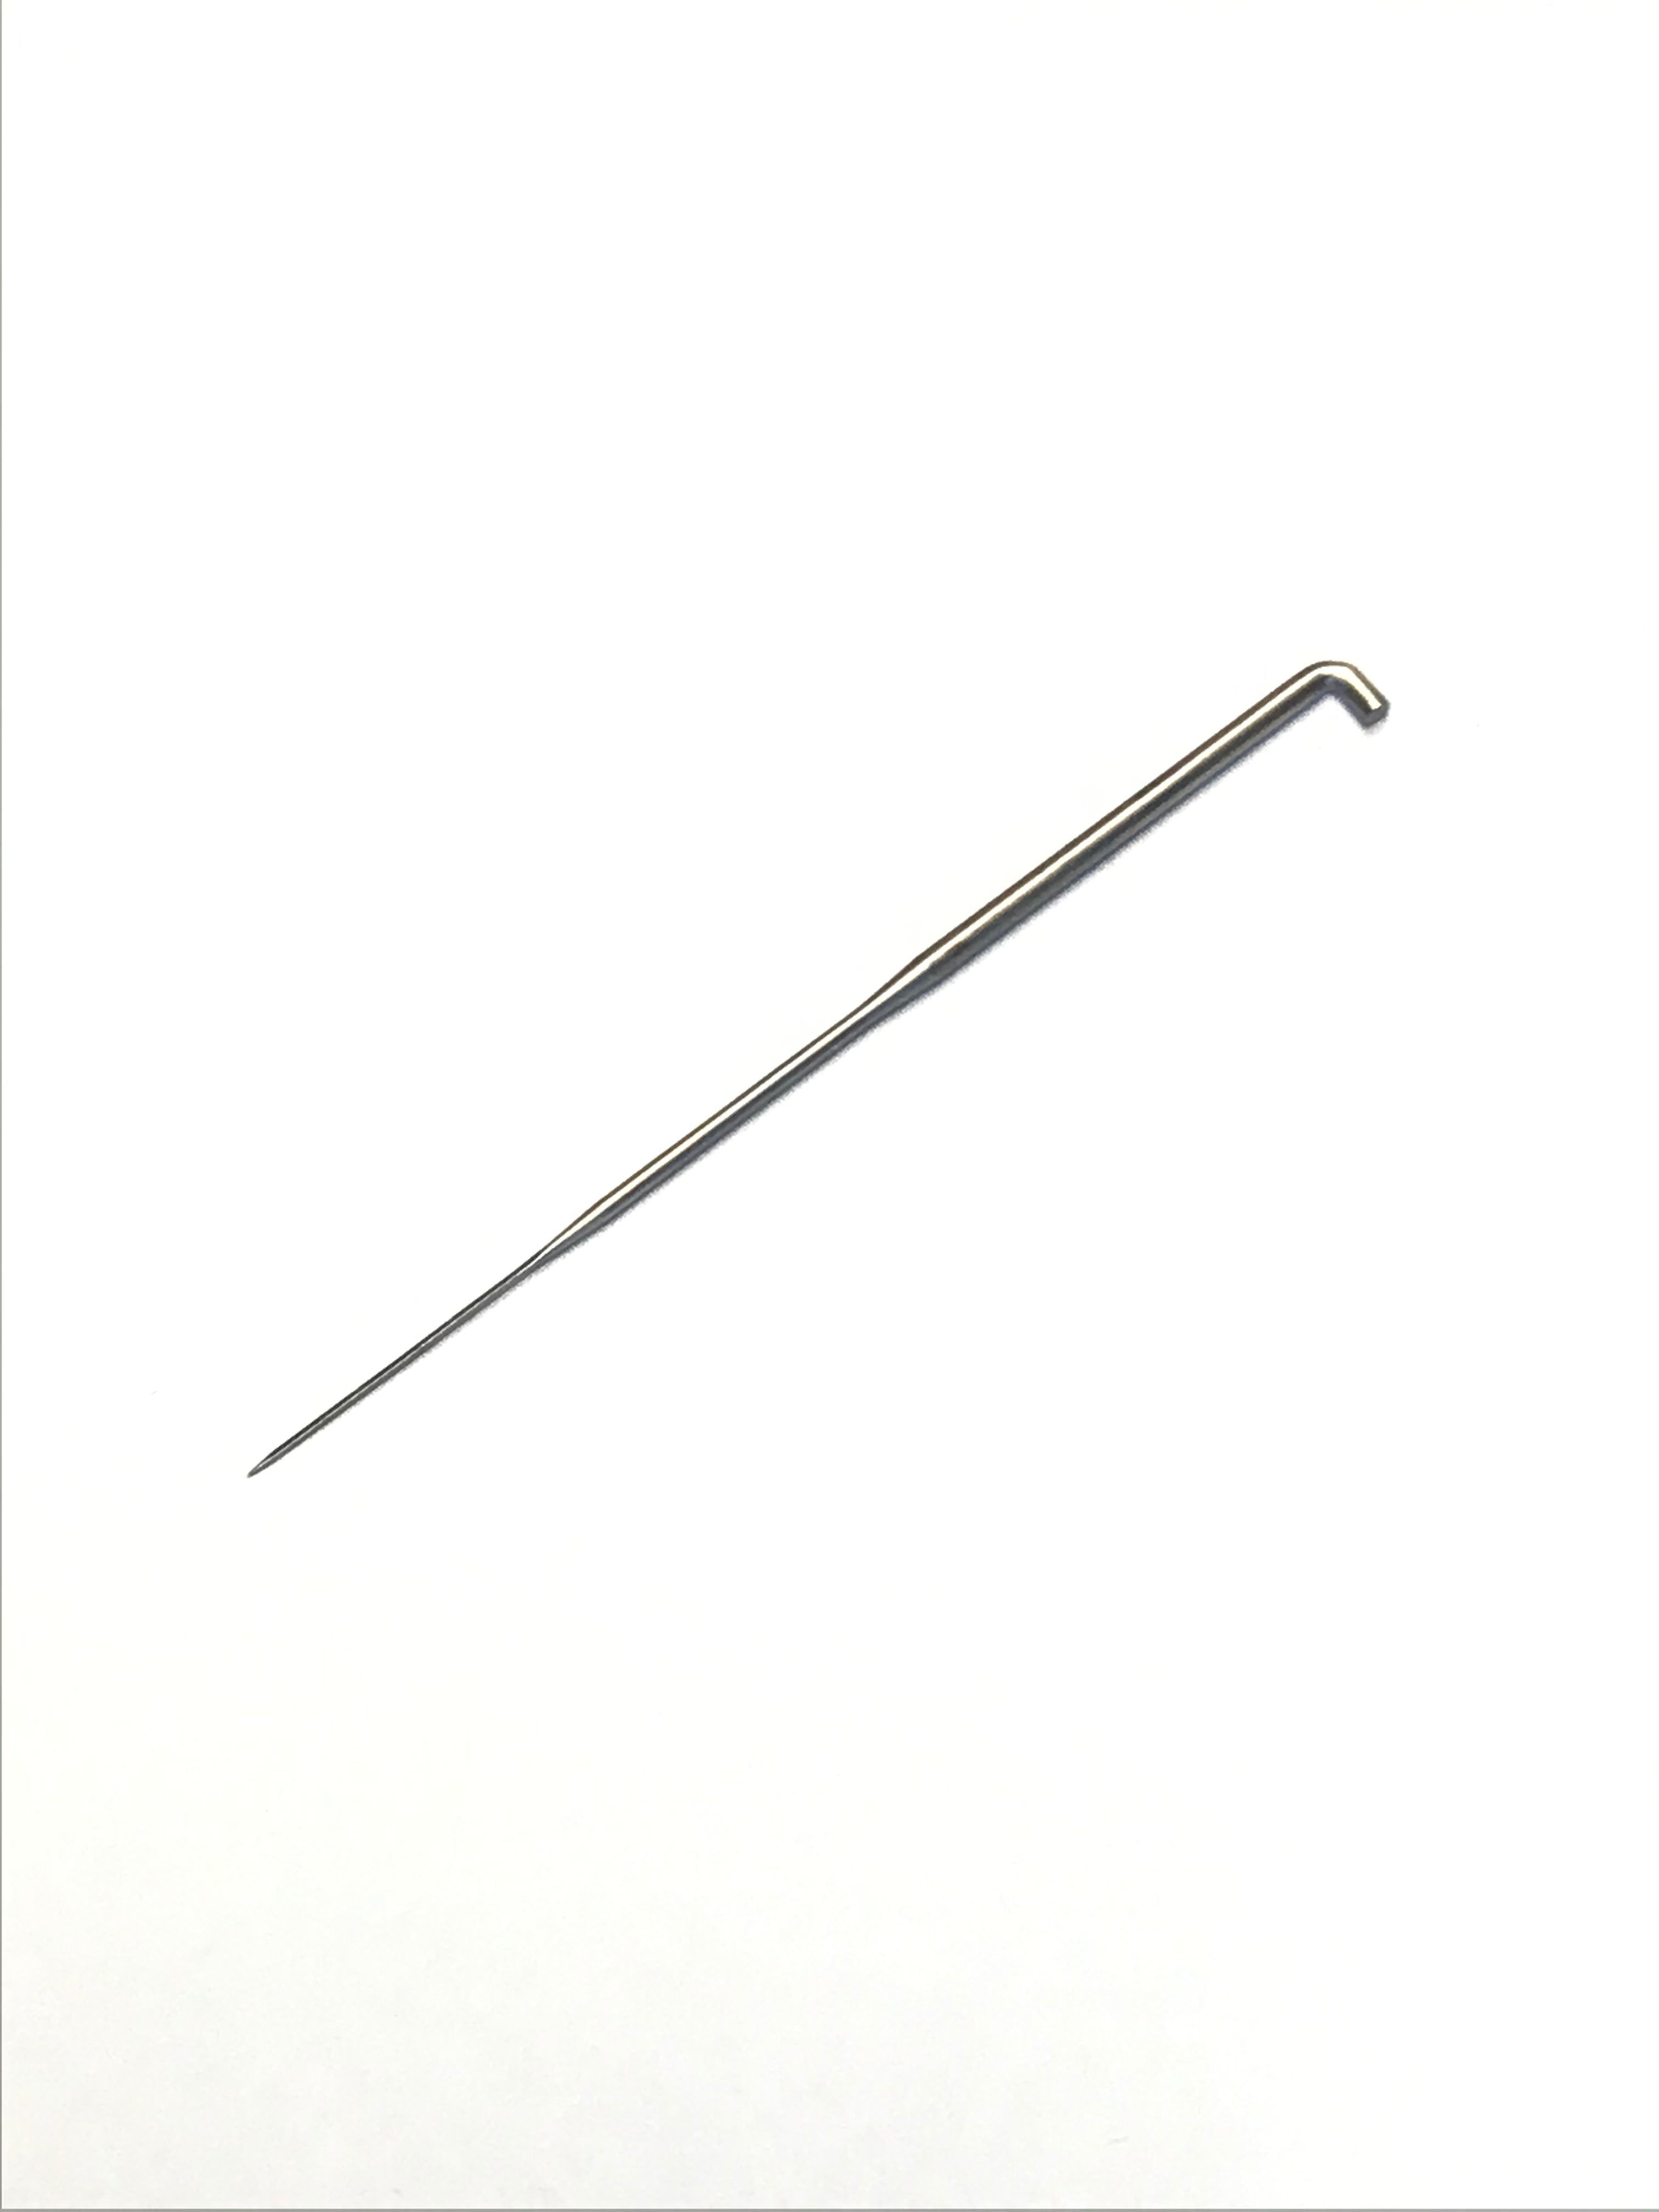 207 - Single Hair Punching Needle